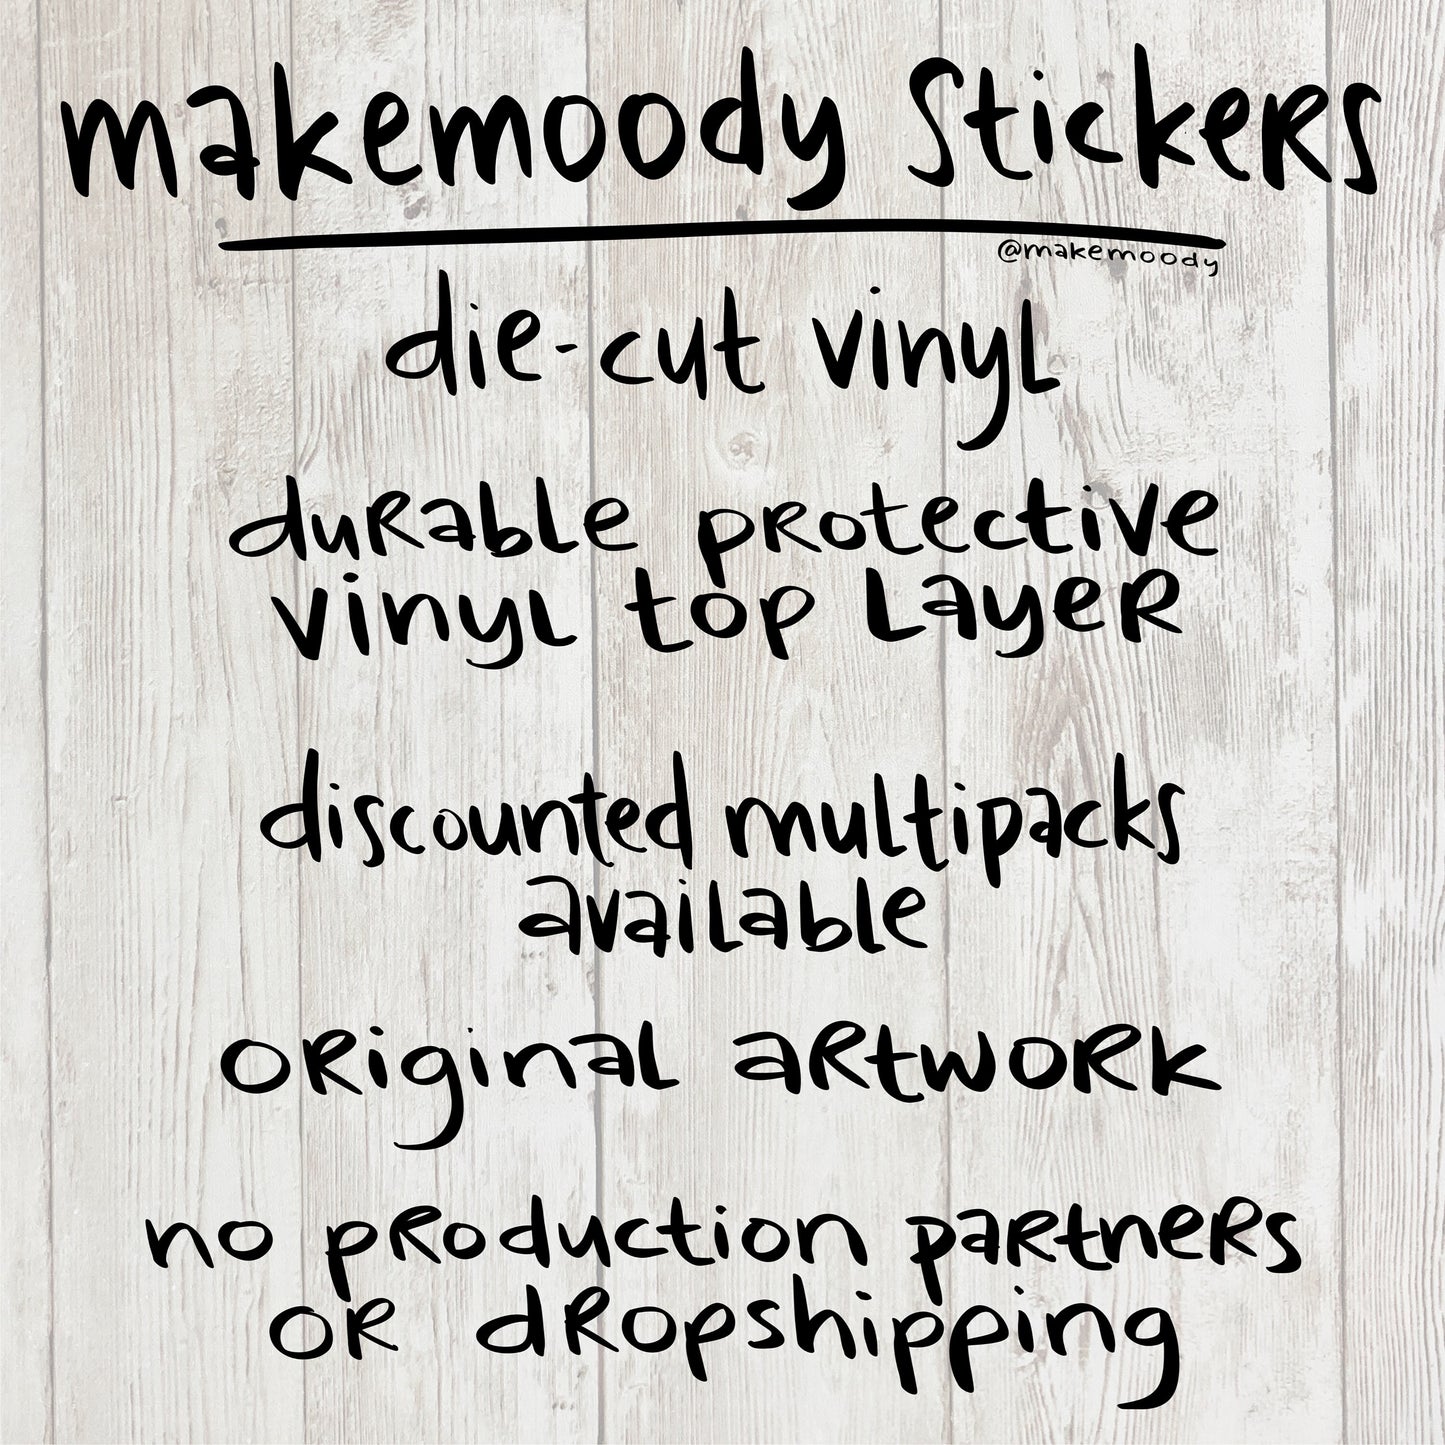 Wizard Knitting STICKER - Vinyl Decal Sticker- Boy Wizard Sticker, Old Wizard Sticker, Knitting Patterns Sticker, Wizard School Sticker